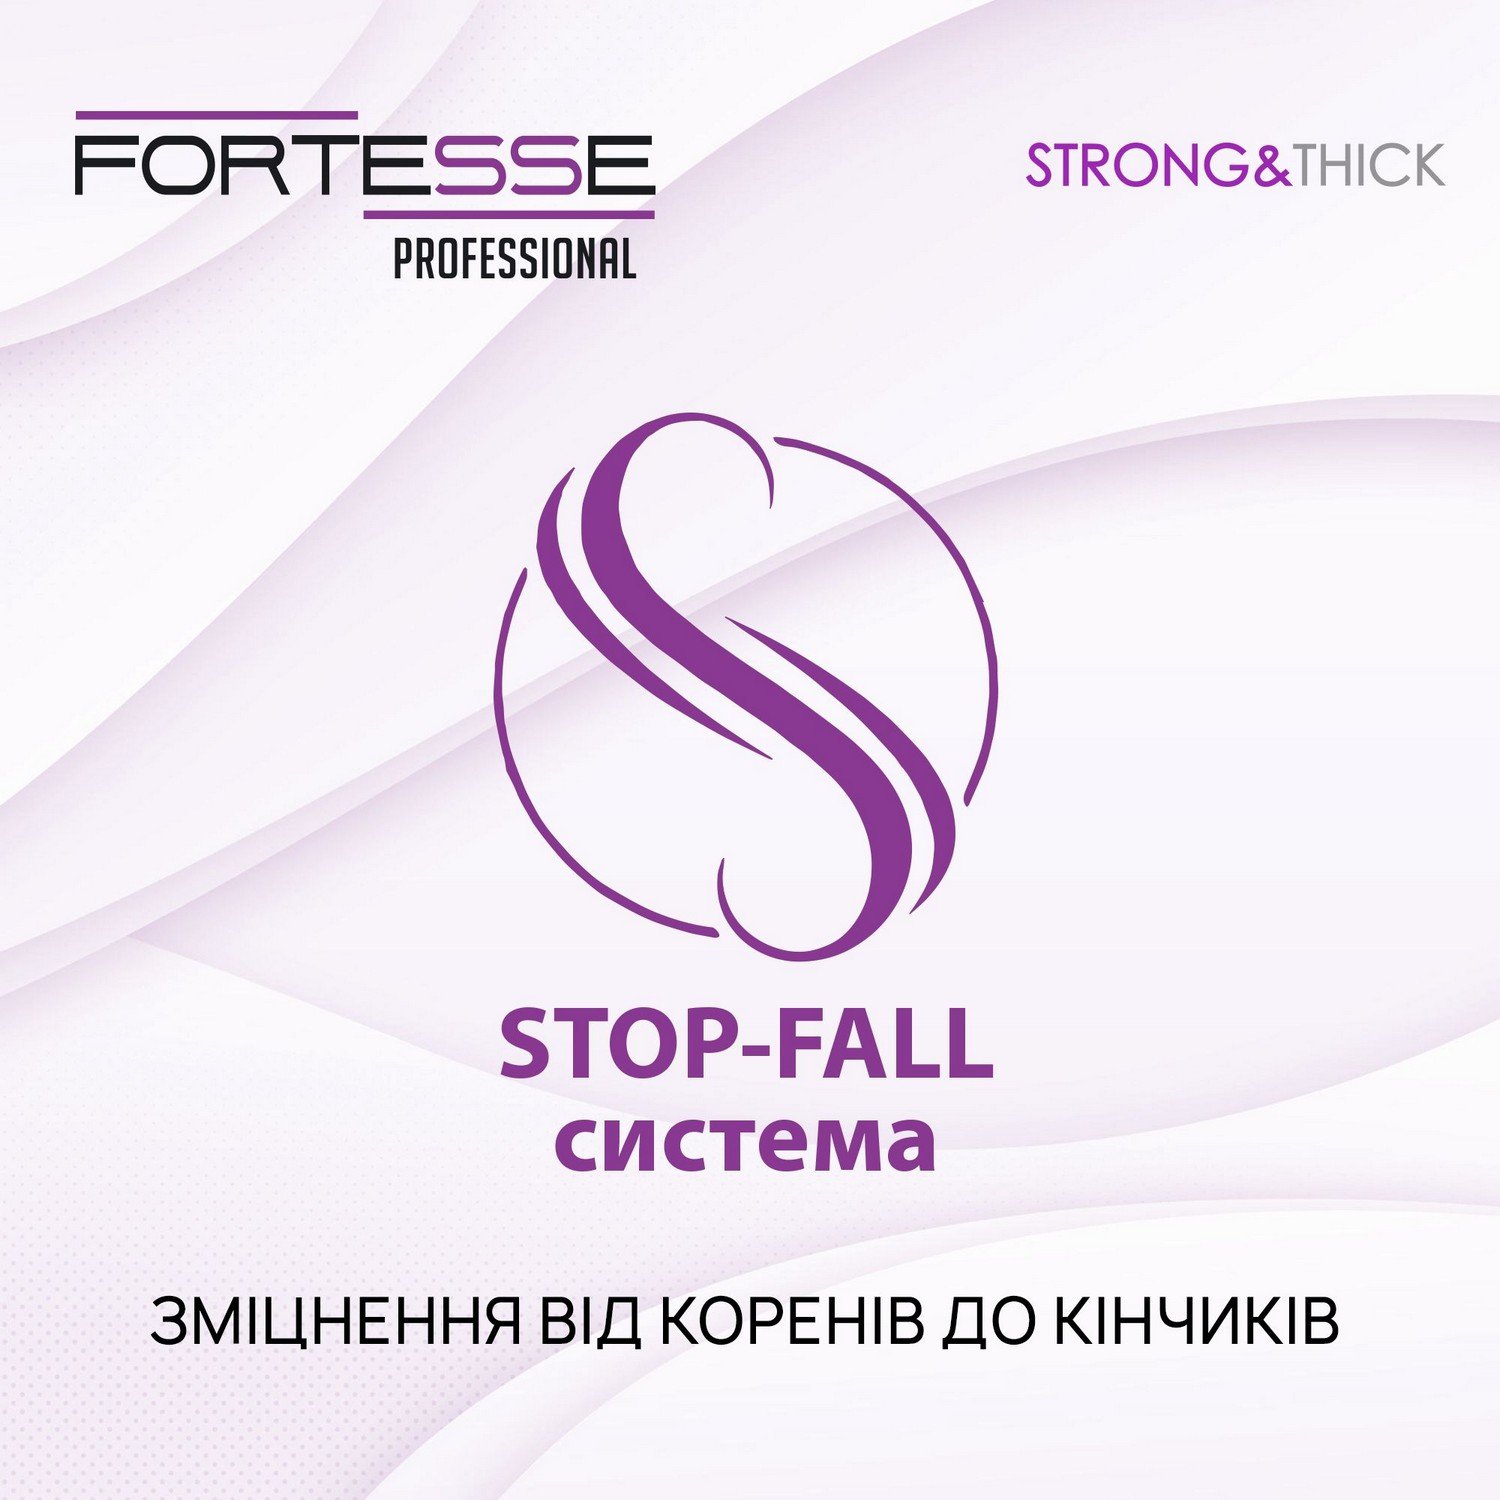 Укрепляющий шампунь Fortesse Professional Strong&Thick для ослабленных волос, склонных к выпадению, 400 мл - фото 6